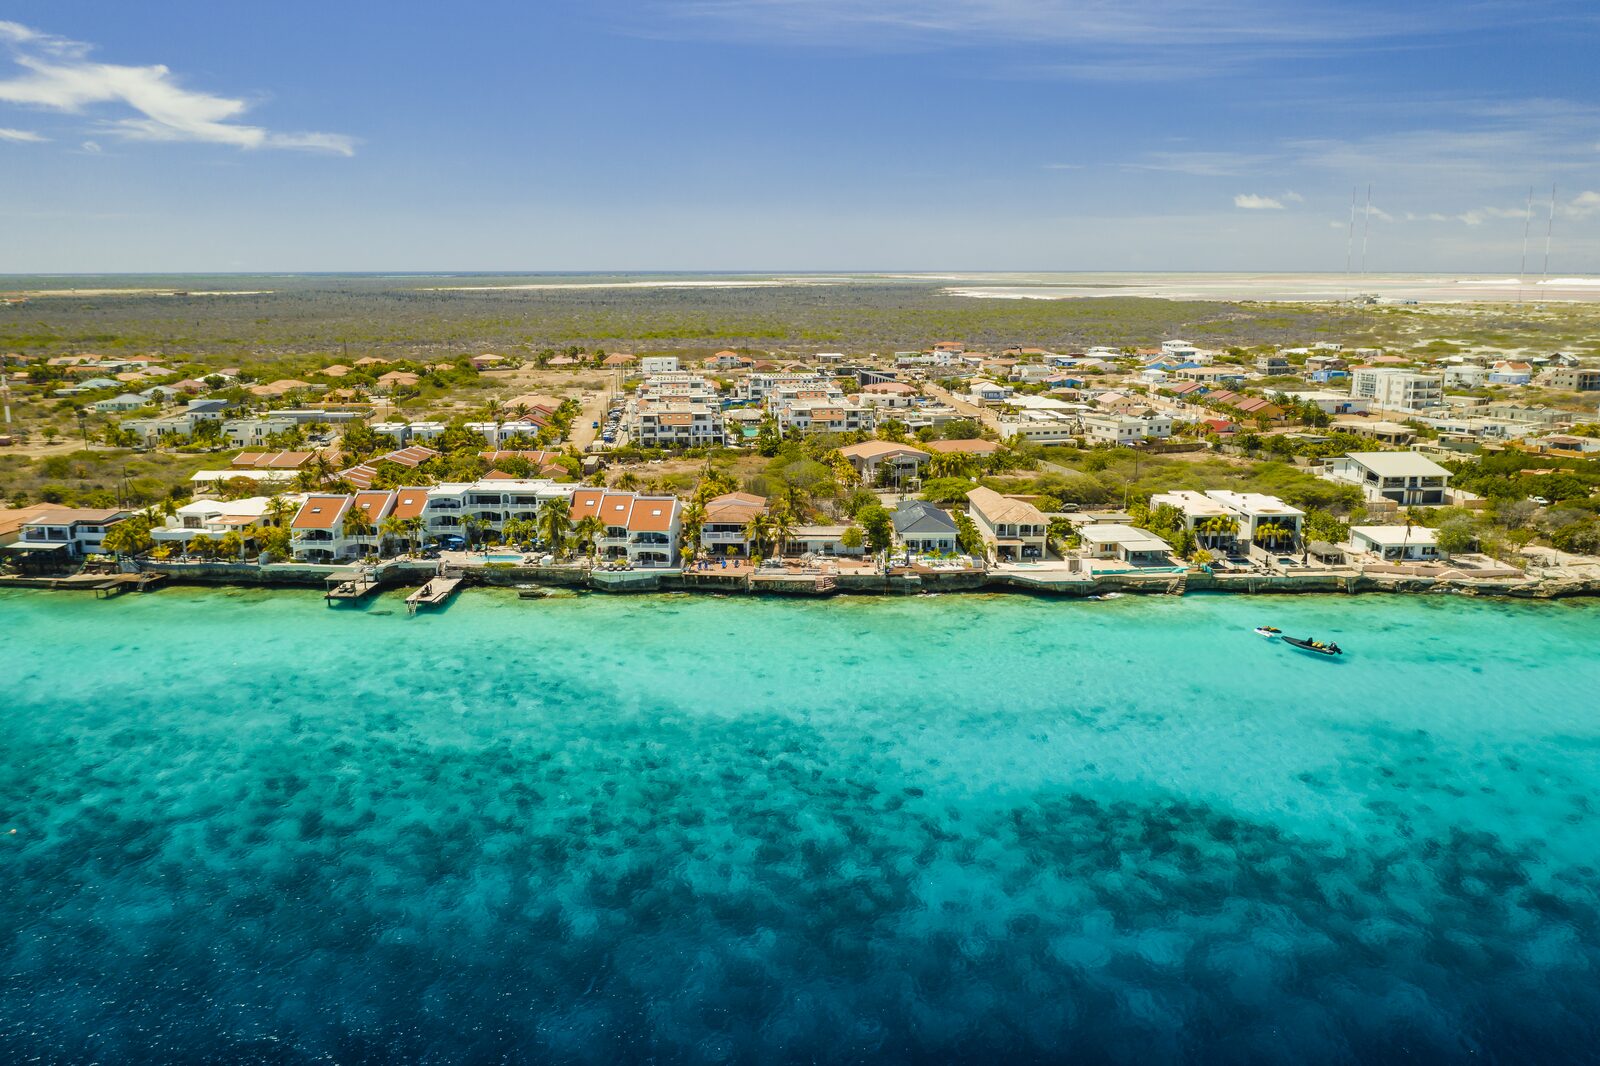 Resort Bonaire